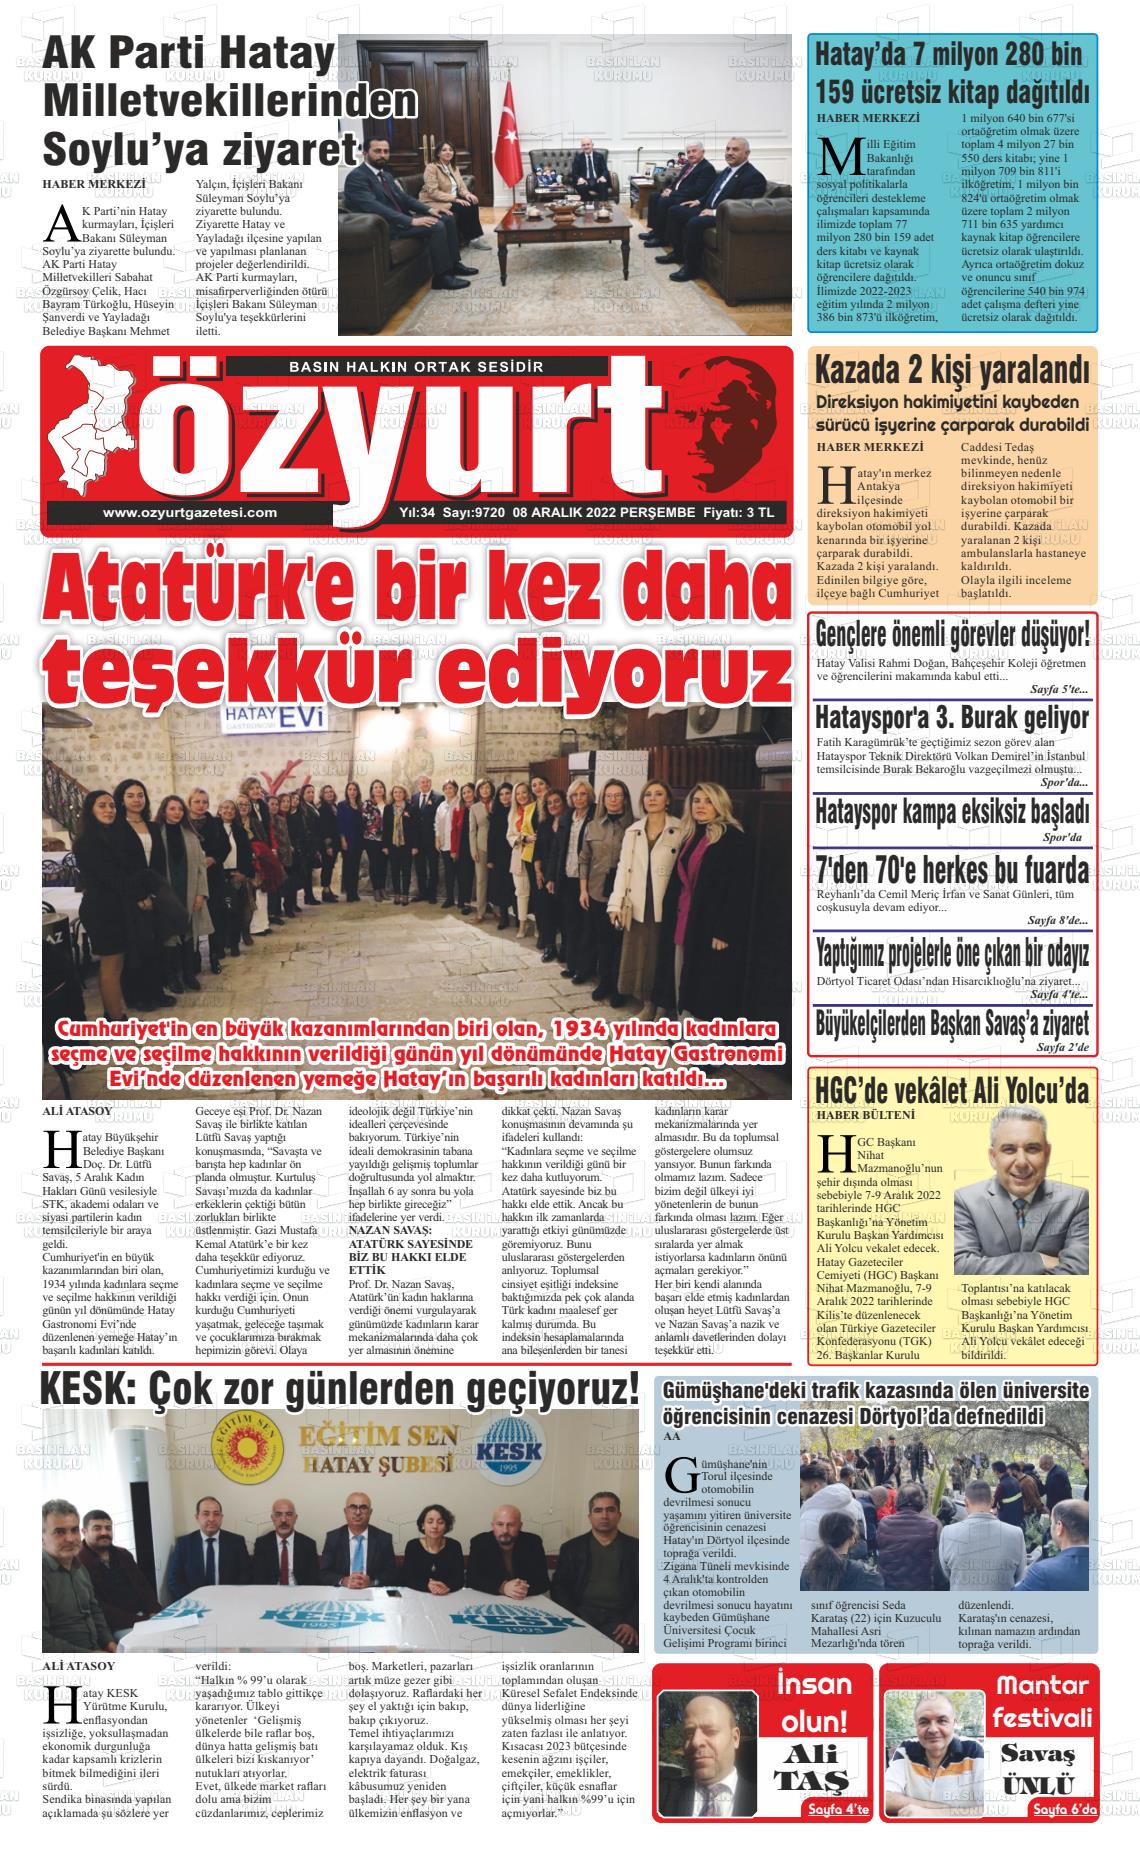 08 Aralık 2022 Özyurt Gazete Manşeti